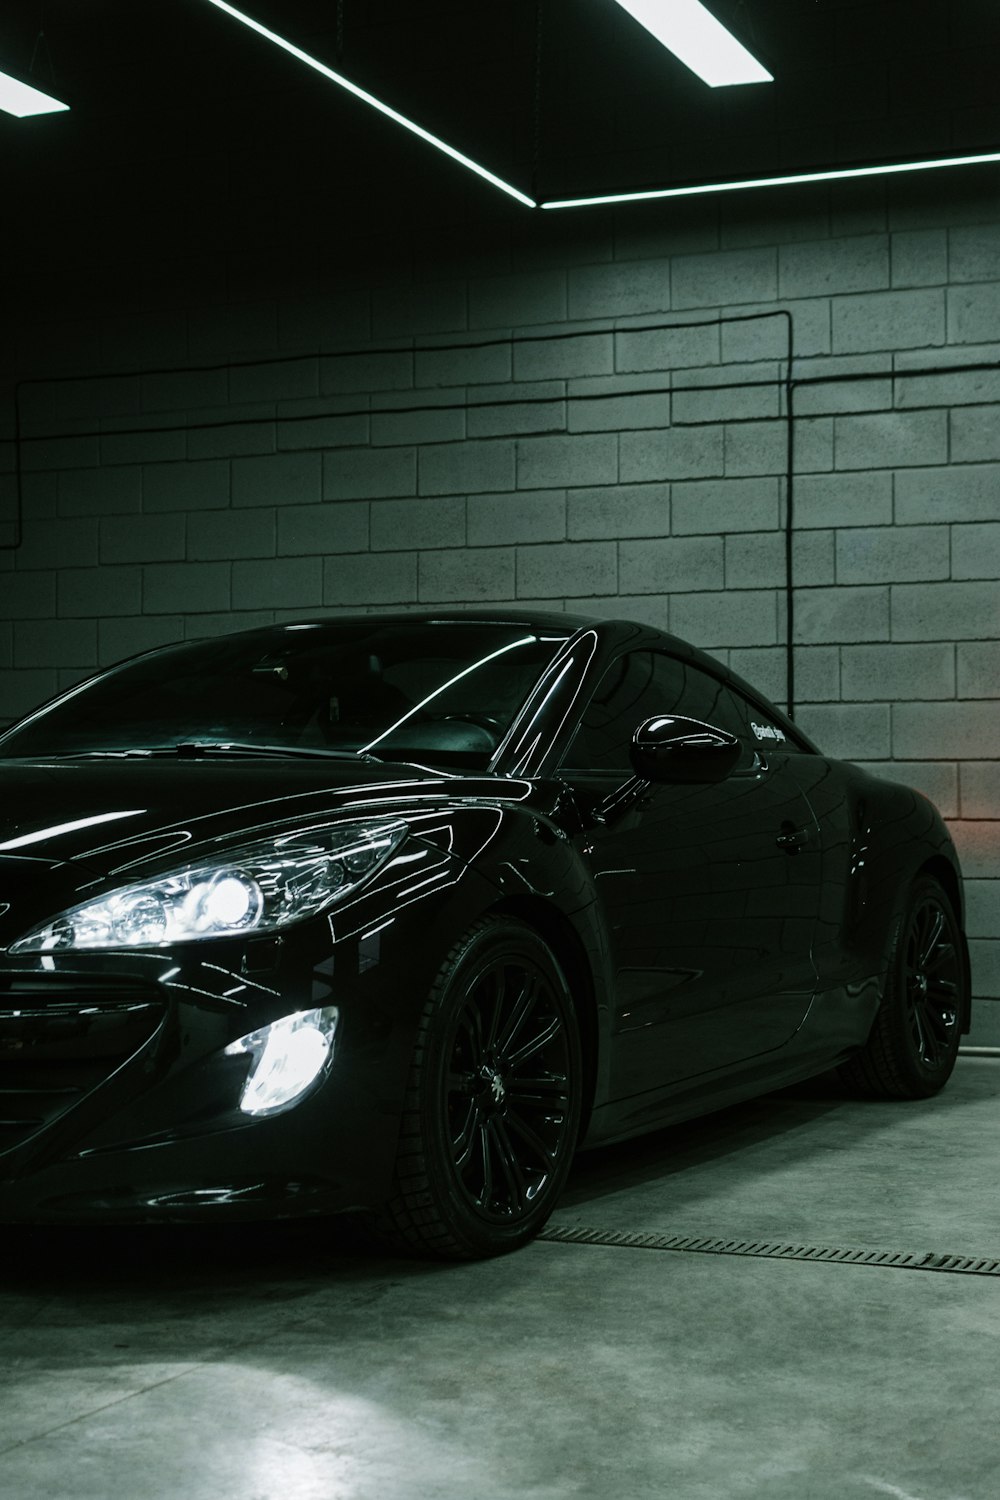 Ein schwarzer Sportwagen in einer Garage geparkt